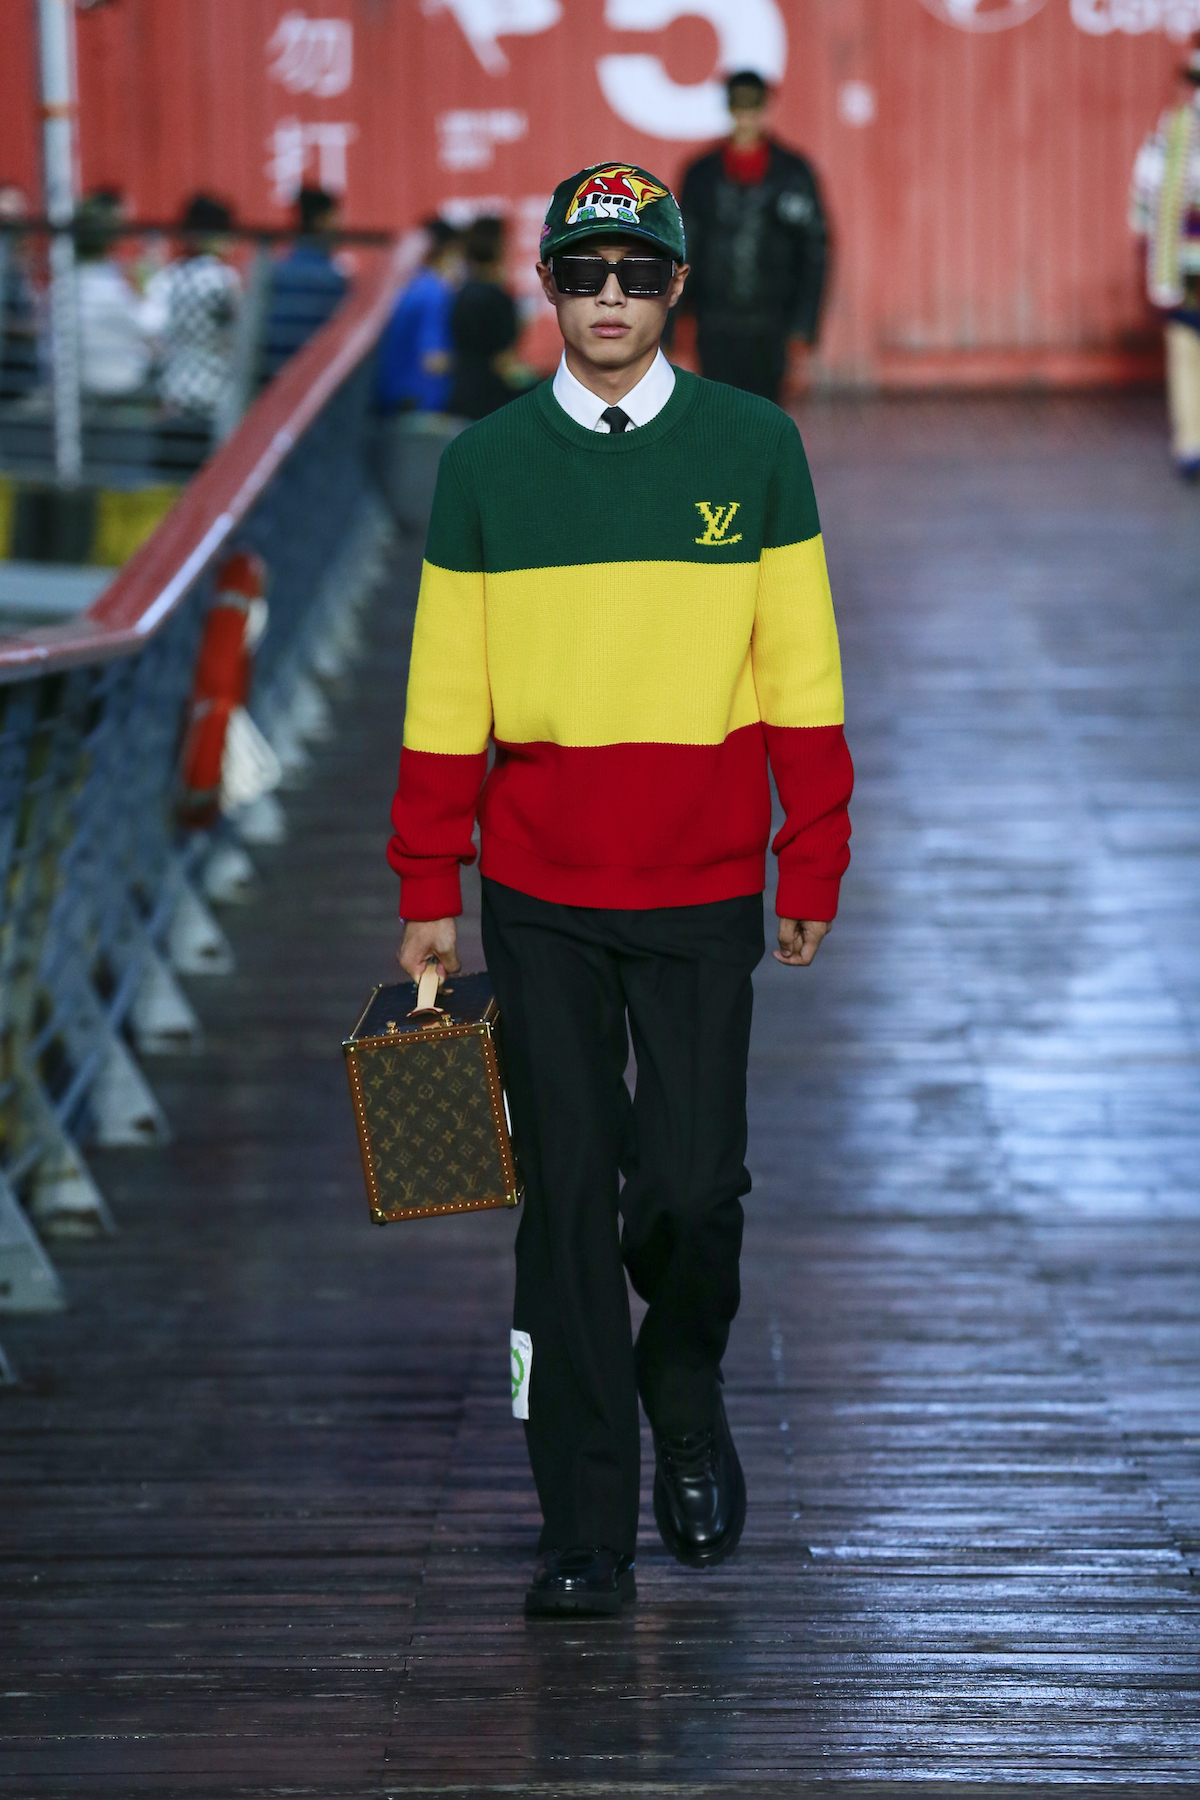 Louis Vuitton slammed as 'Jamaica' jumper features wrong flag